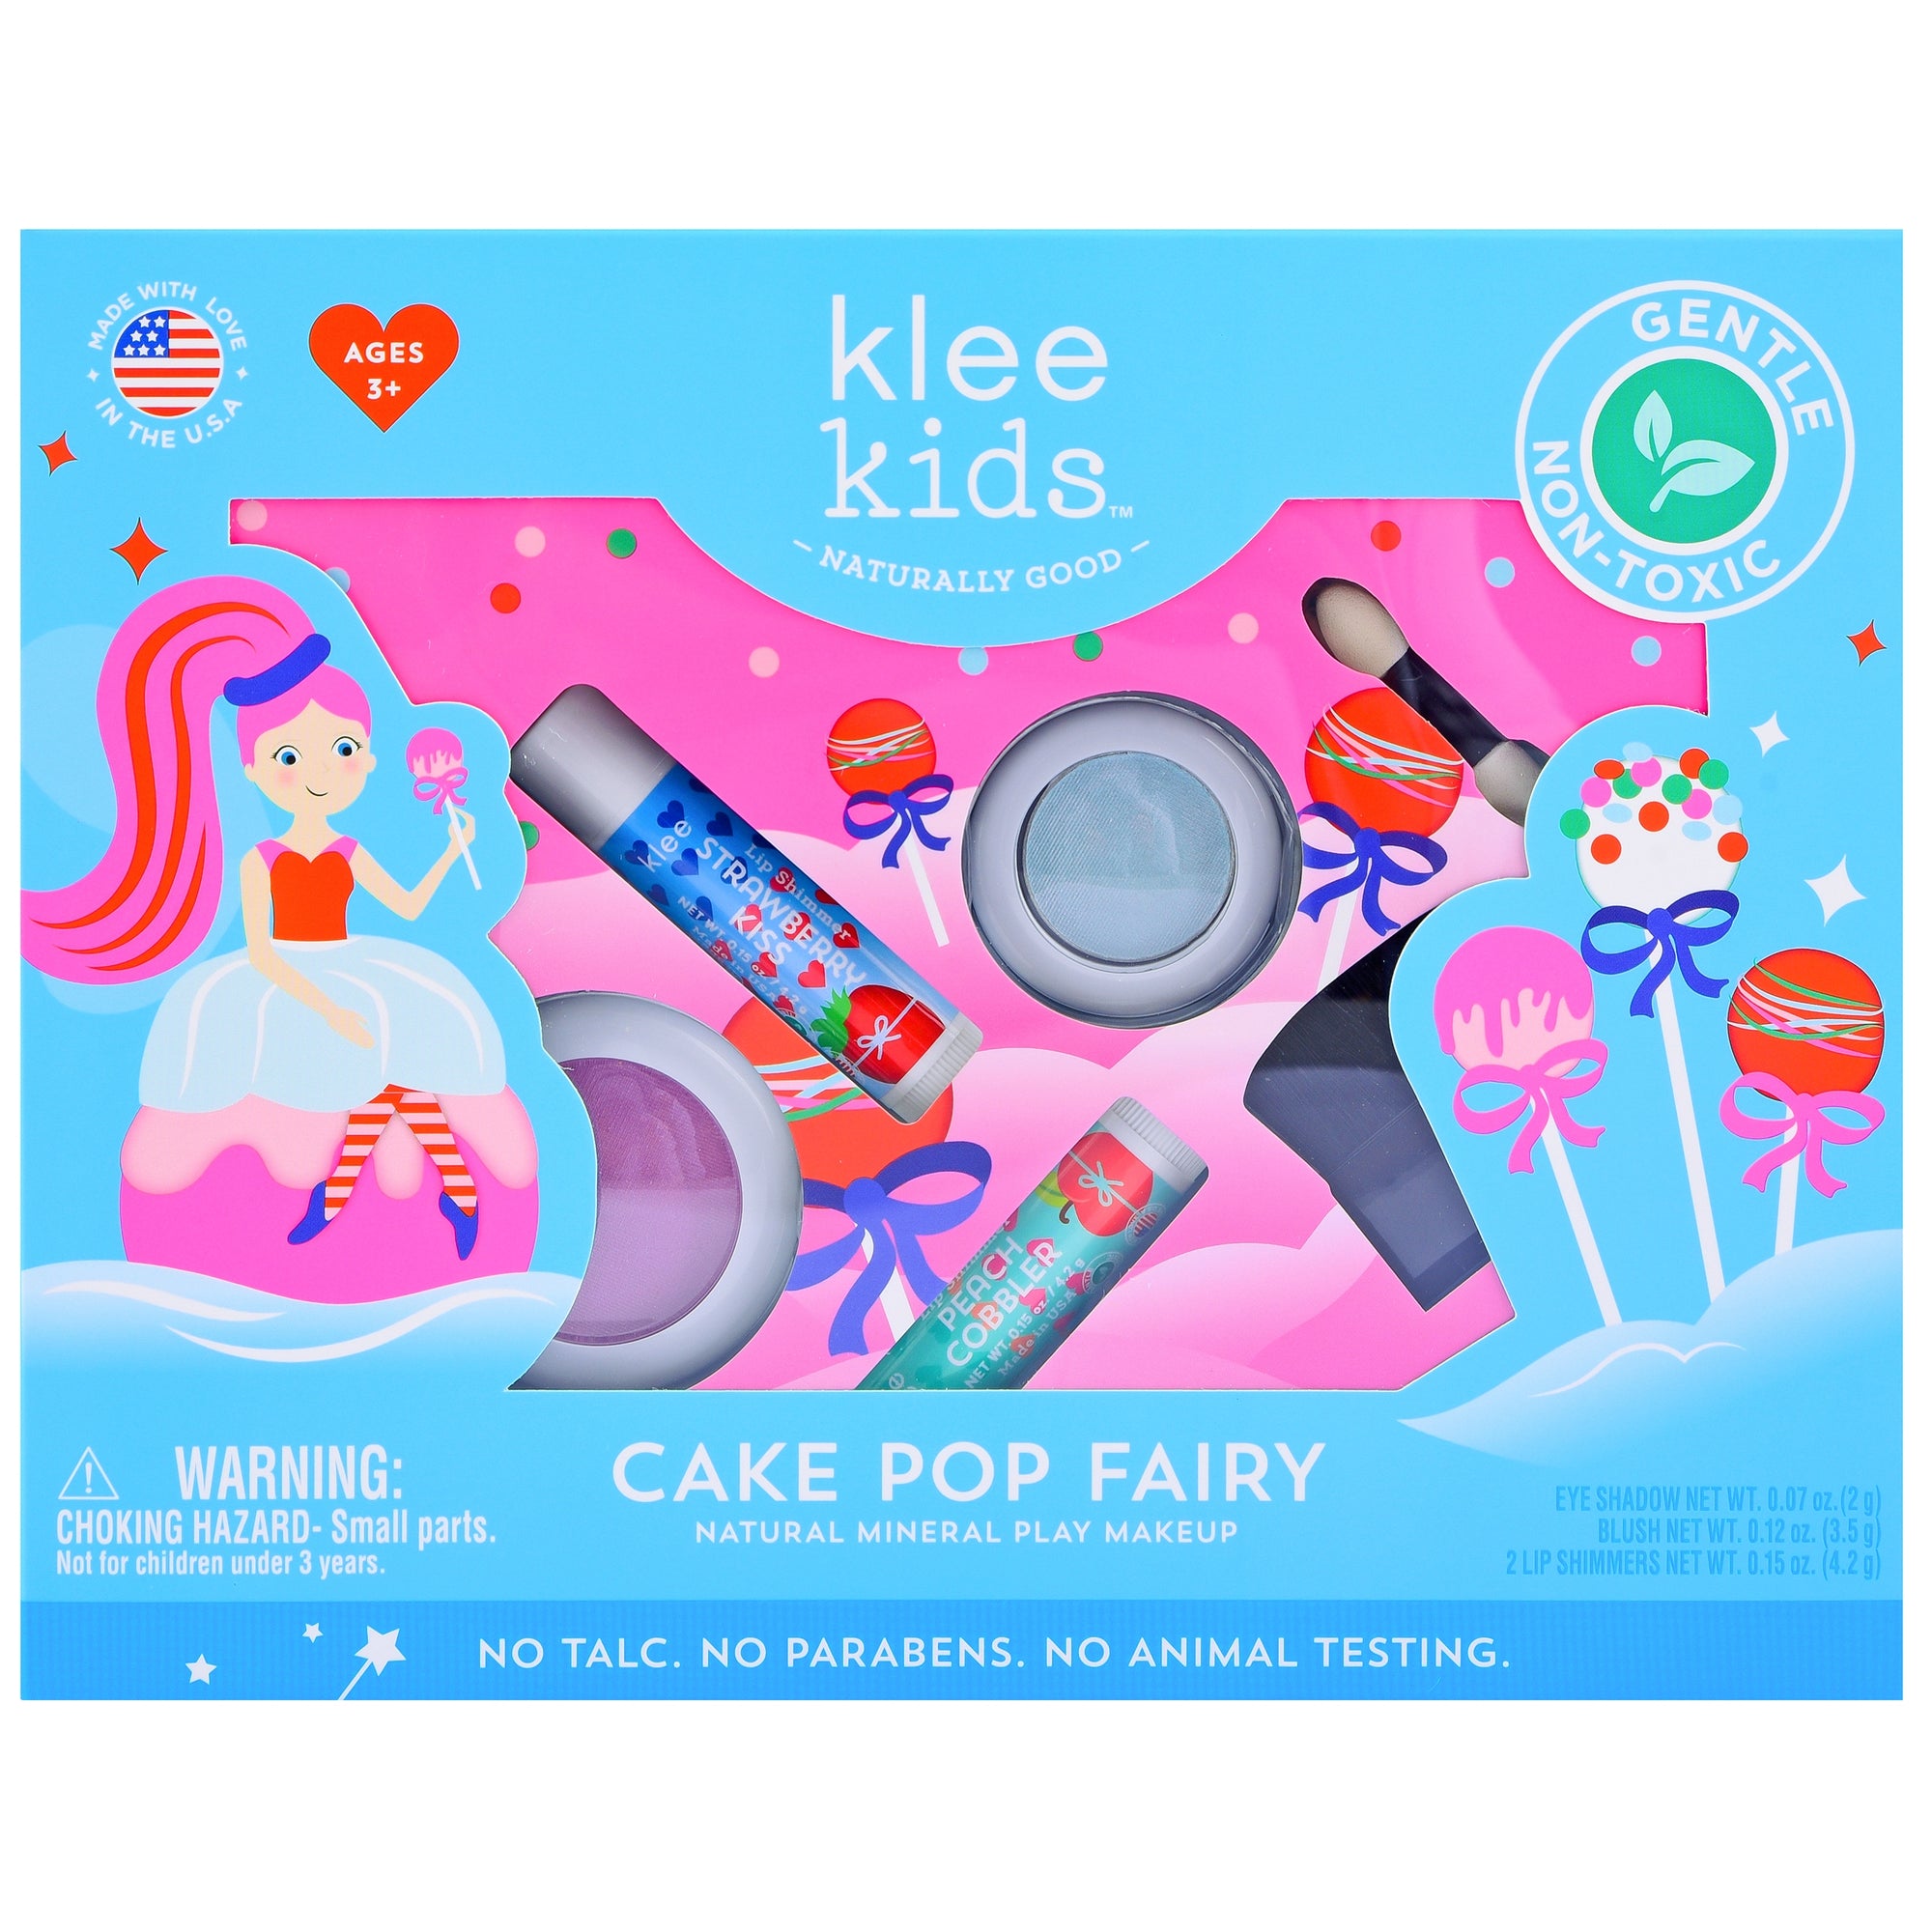 Cake Pop Fairy 4pc Natural Play Makeup Set